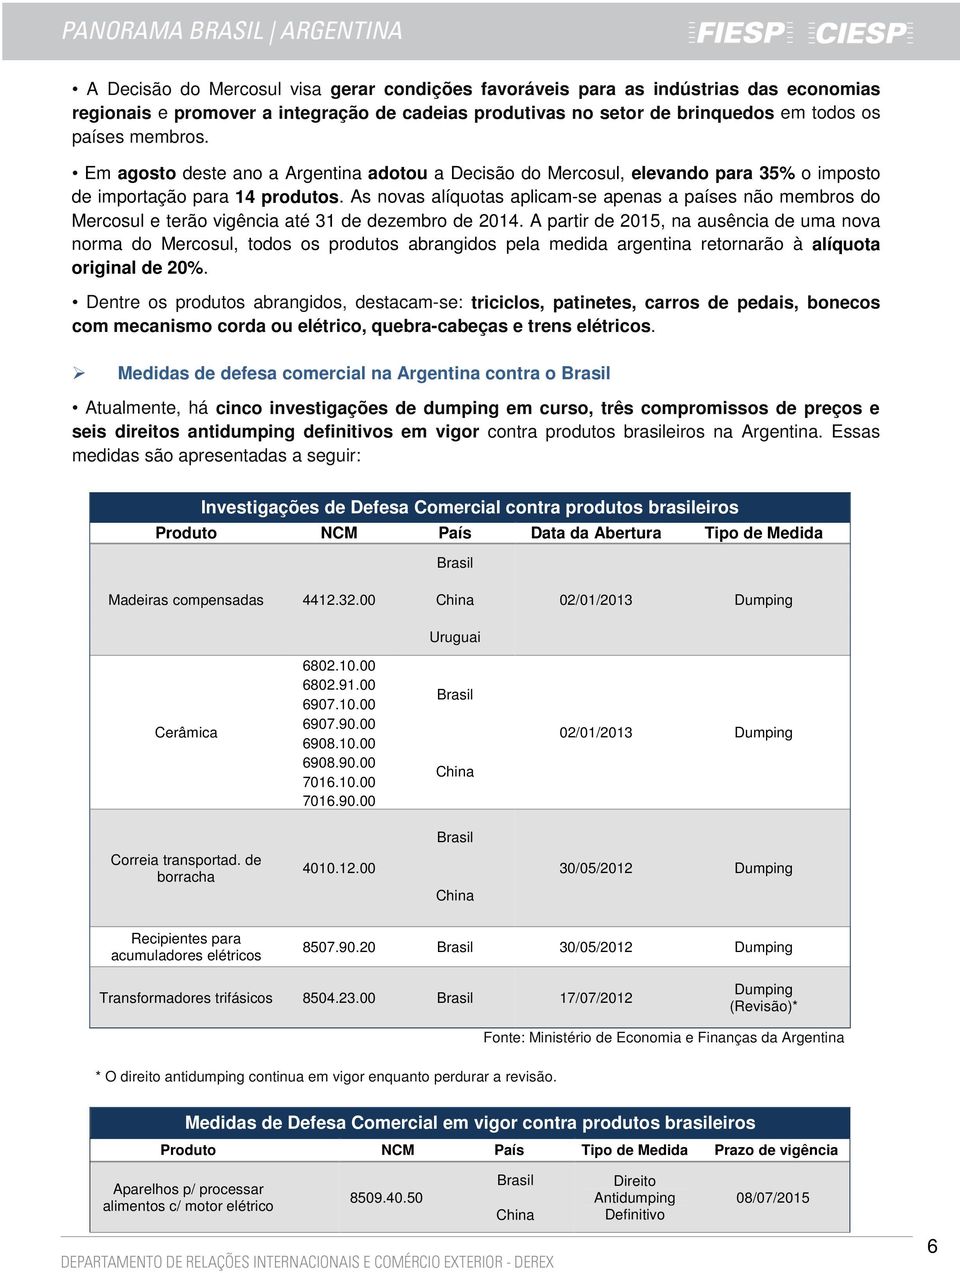 As novas alíquotas aplicam-se apenas a países não membros do Mercosul e terão vigência até 31 de dezembro de 2014.